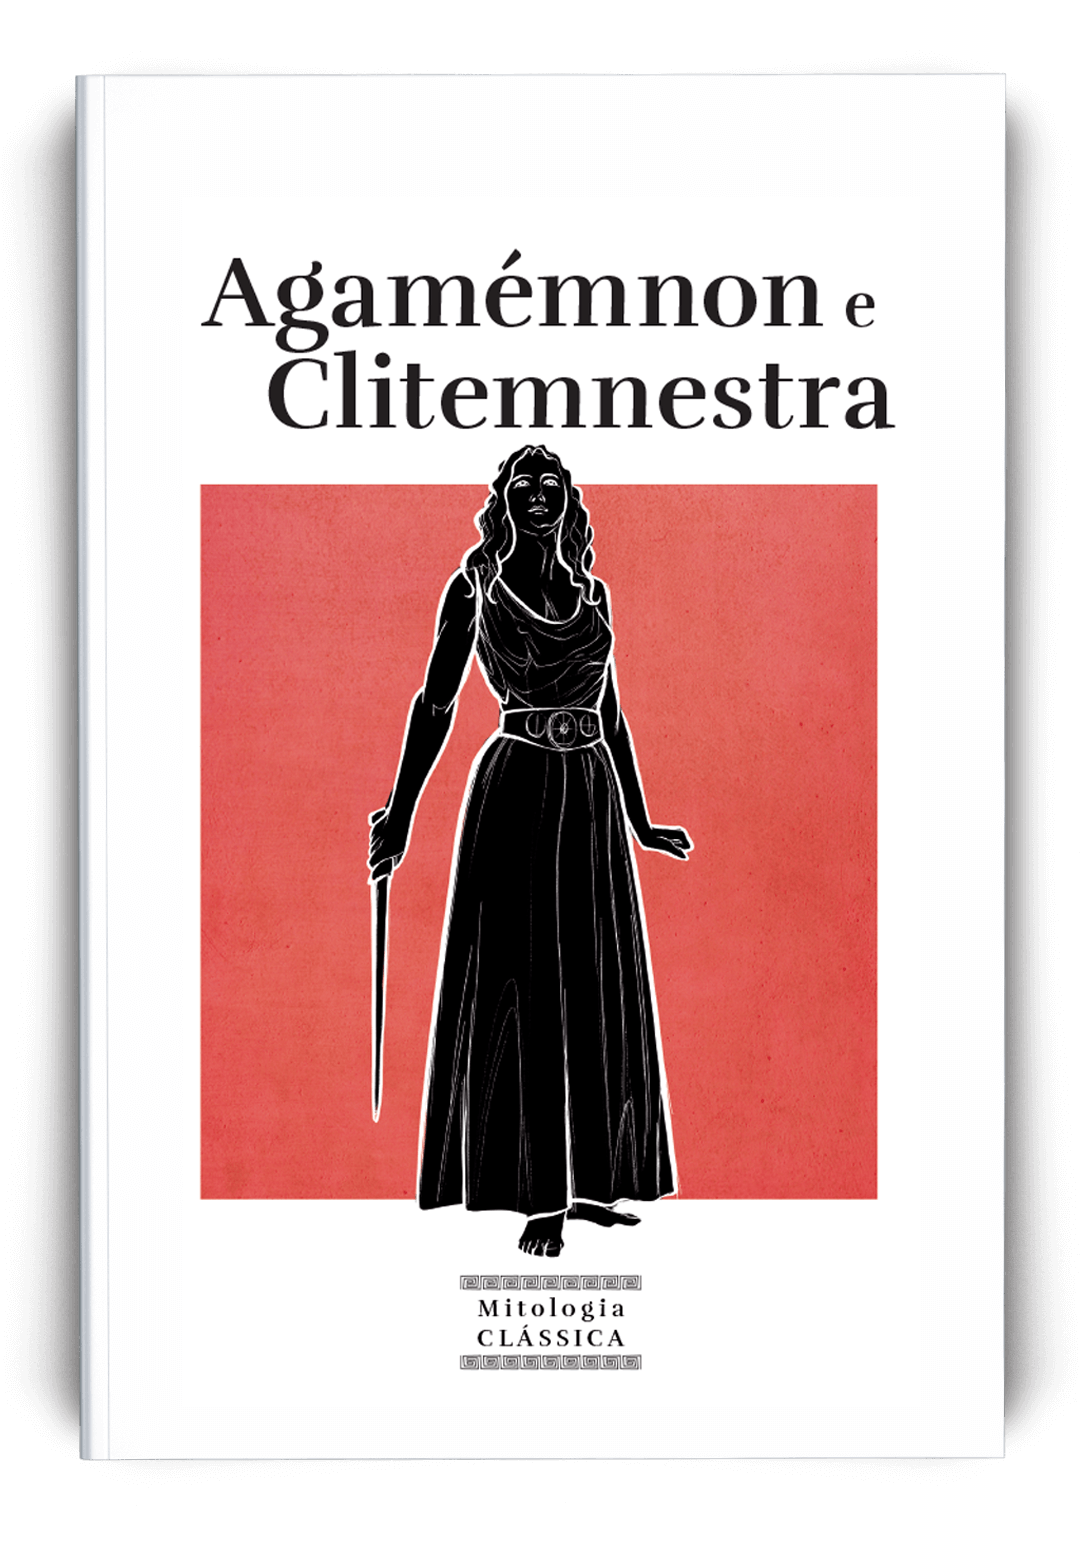 Agamémnon e Clitemnestra